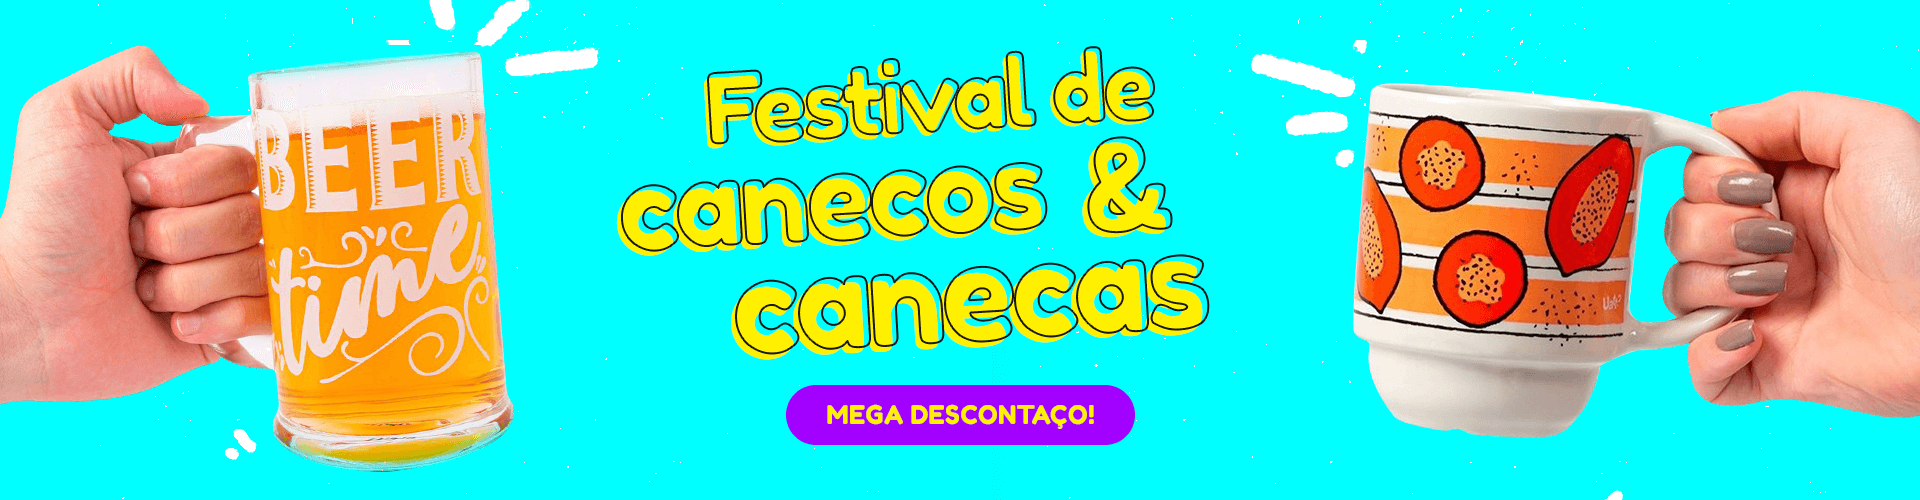 FESTIVAL DE CANECAS